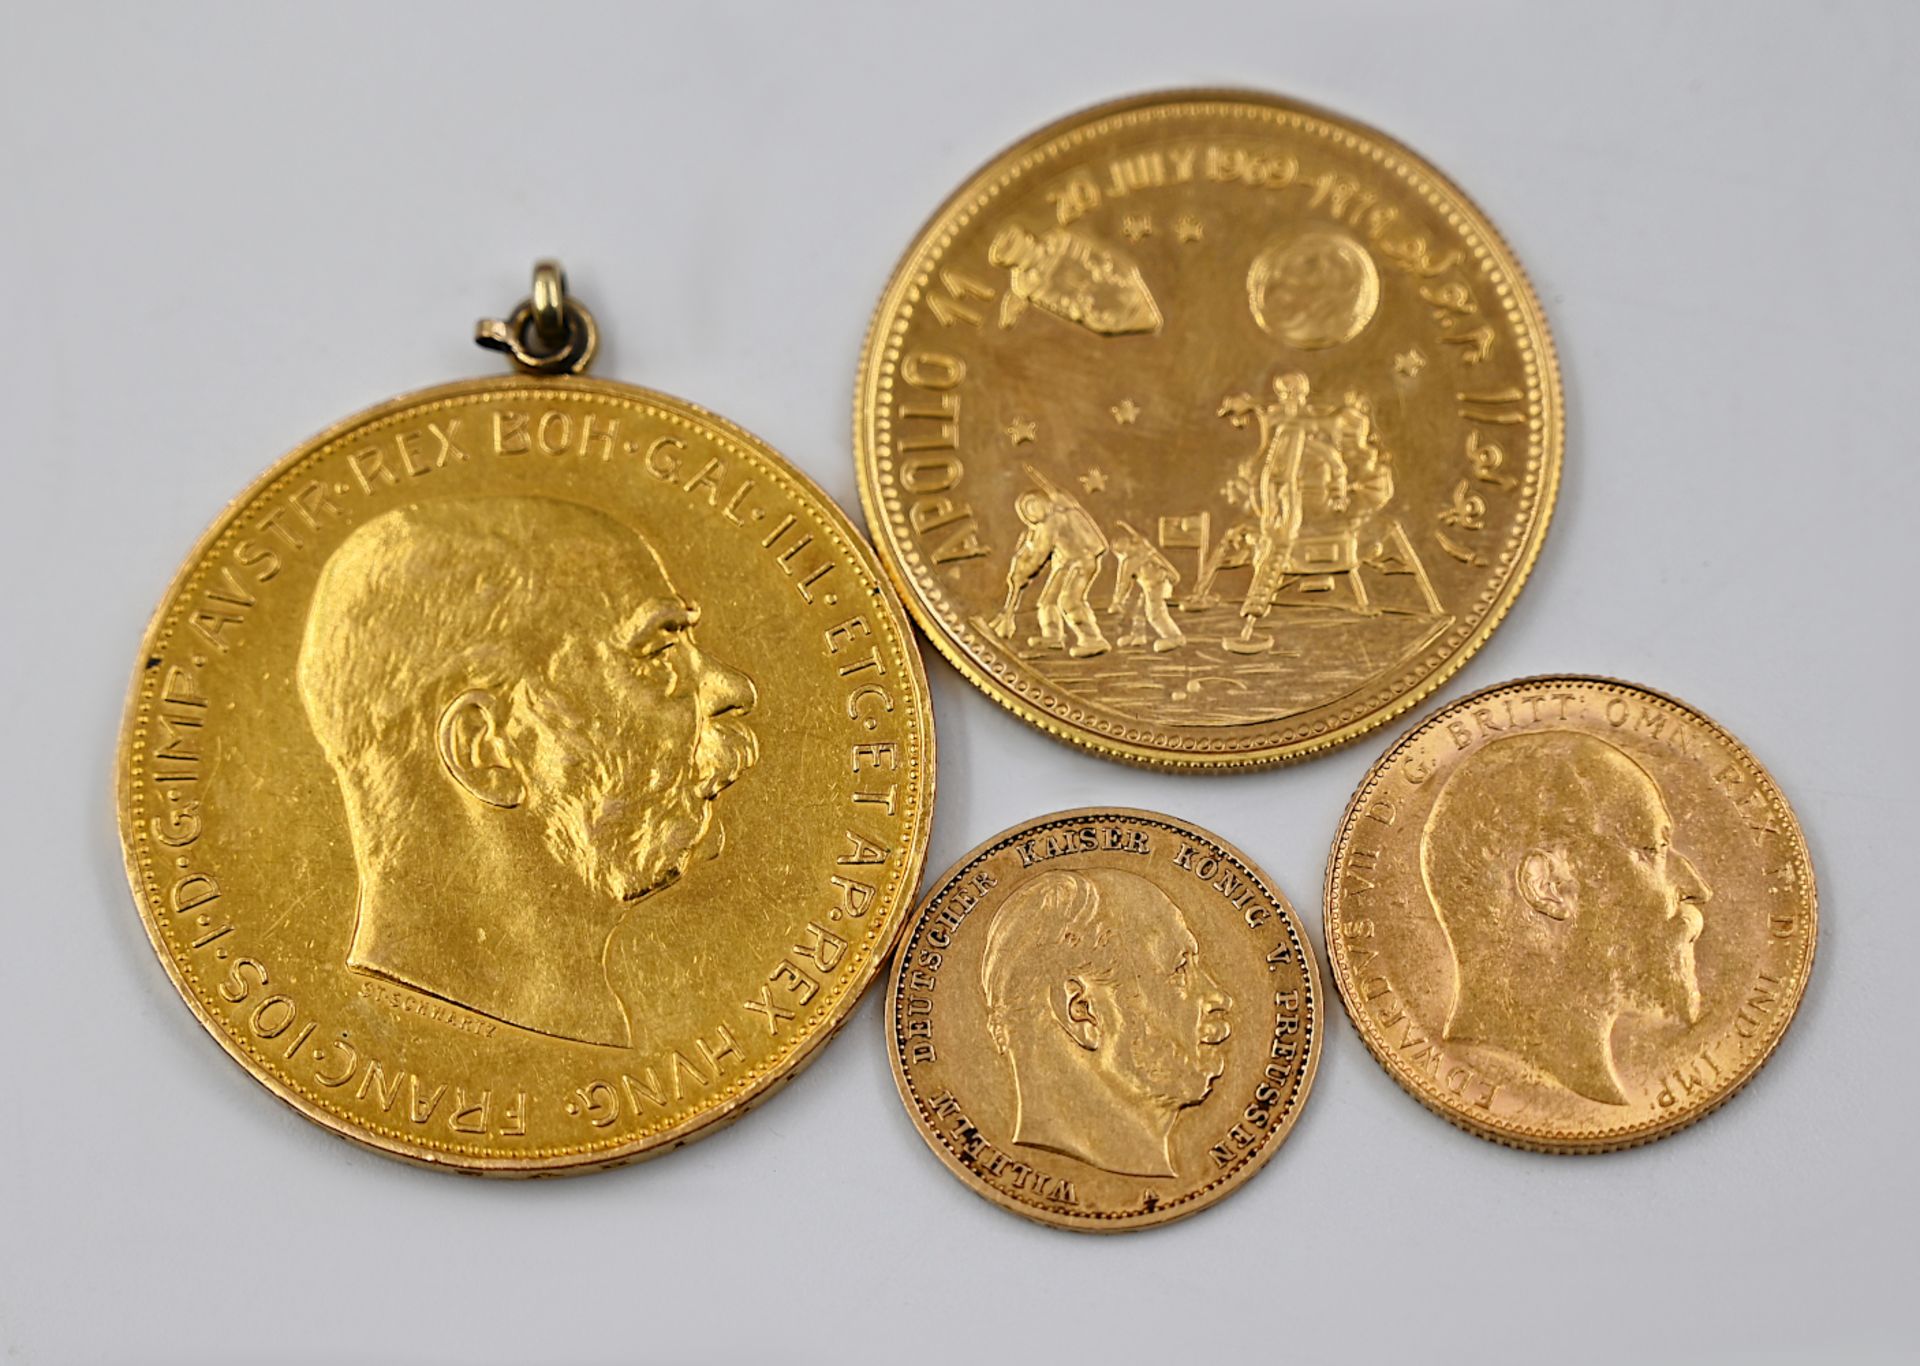 1 Goldmünze Deutsches Reich 10 Mark, 1 Goldmünze England, 1 Goldmünze Österreich 100 Cor (als Anhäng